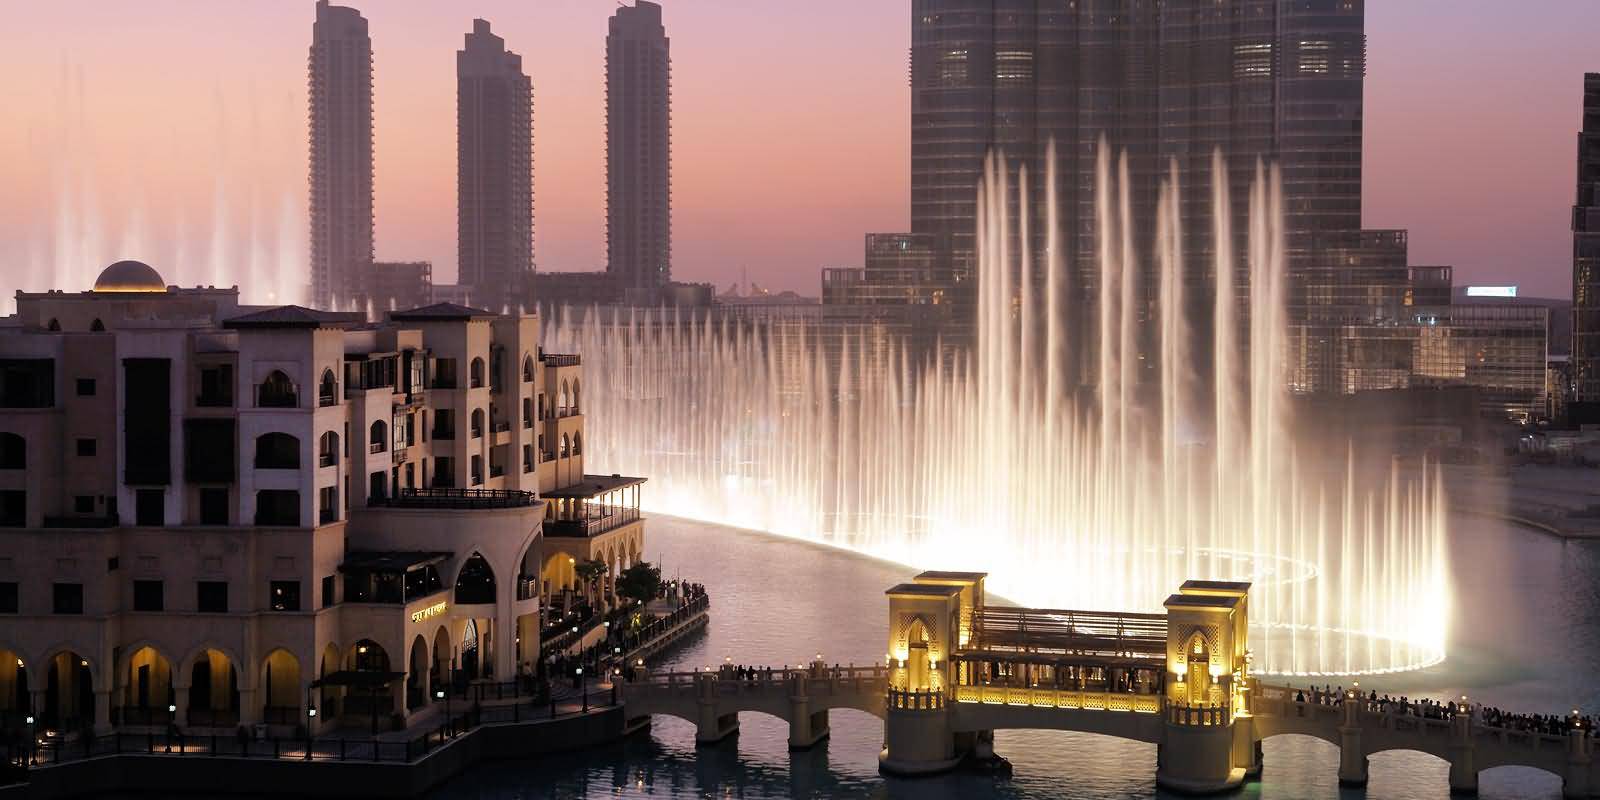 أعلى 5 مطاعم تقييما في دبي خلال سنة 2015